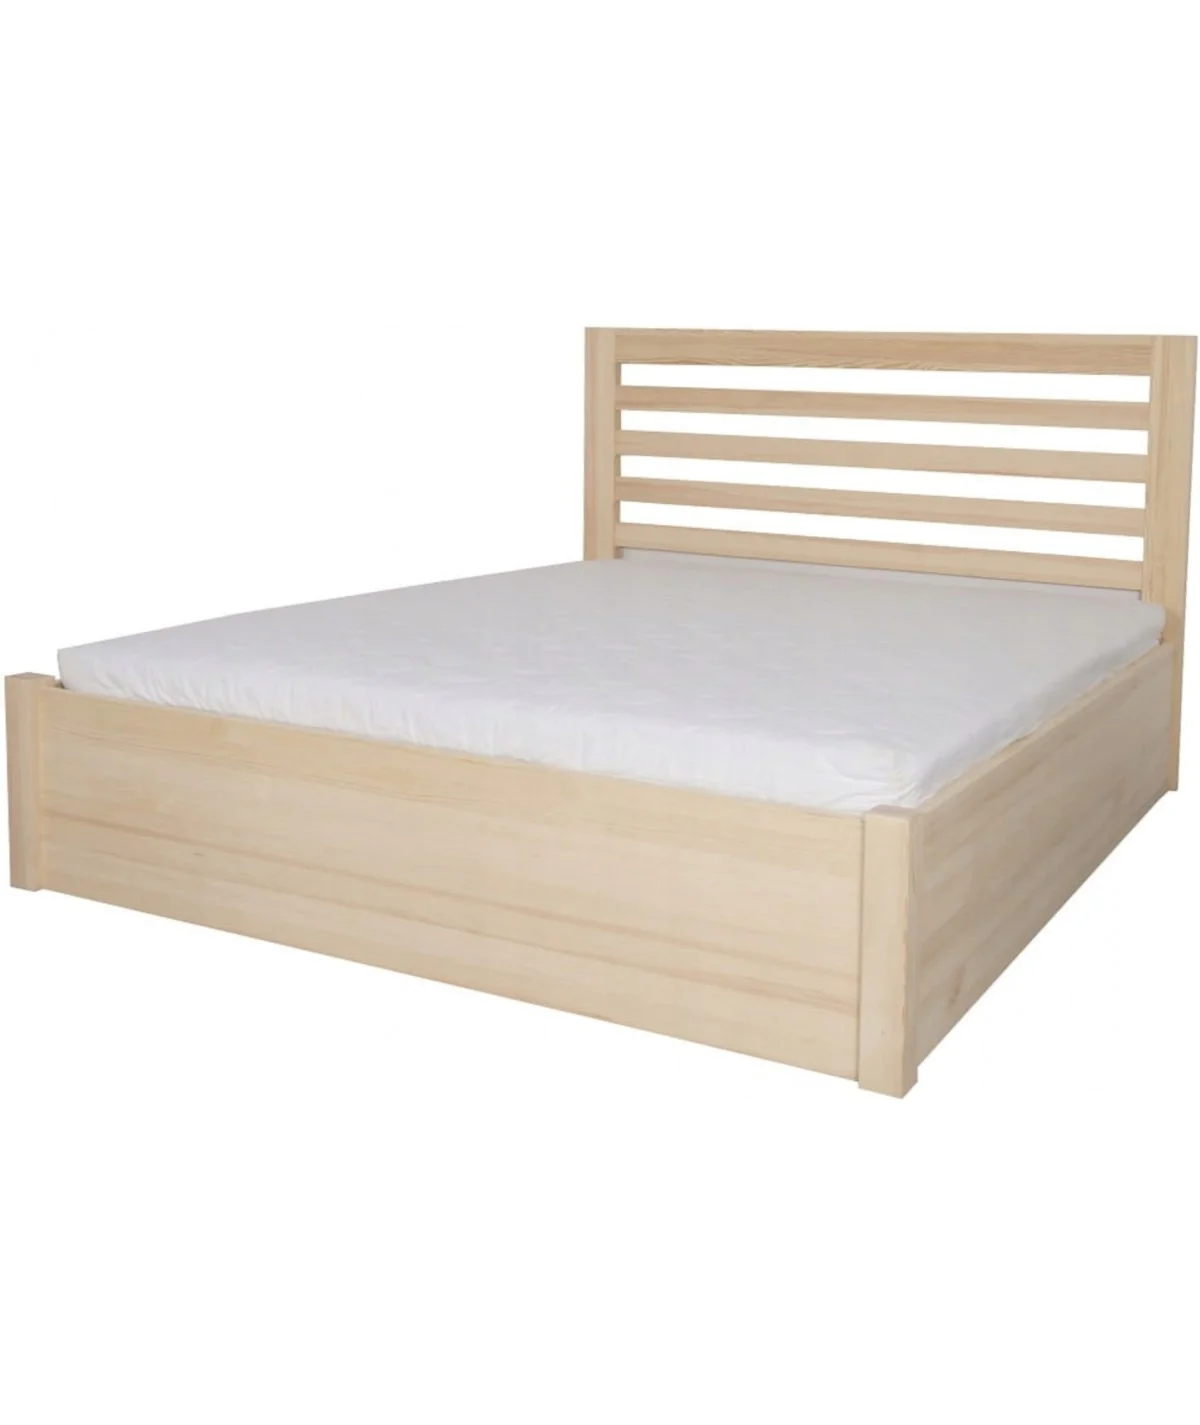 Łóżko sosnowe KORAL 5 STOLMIS podnoszone na ramie drewnianej